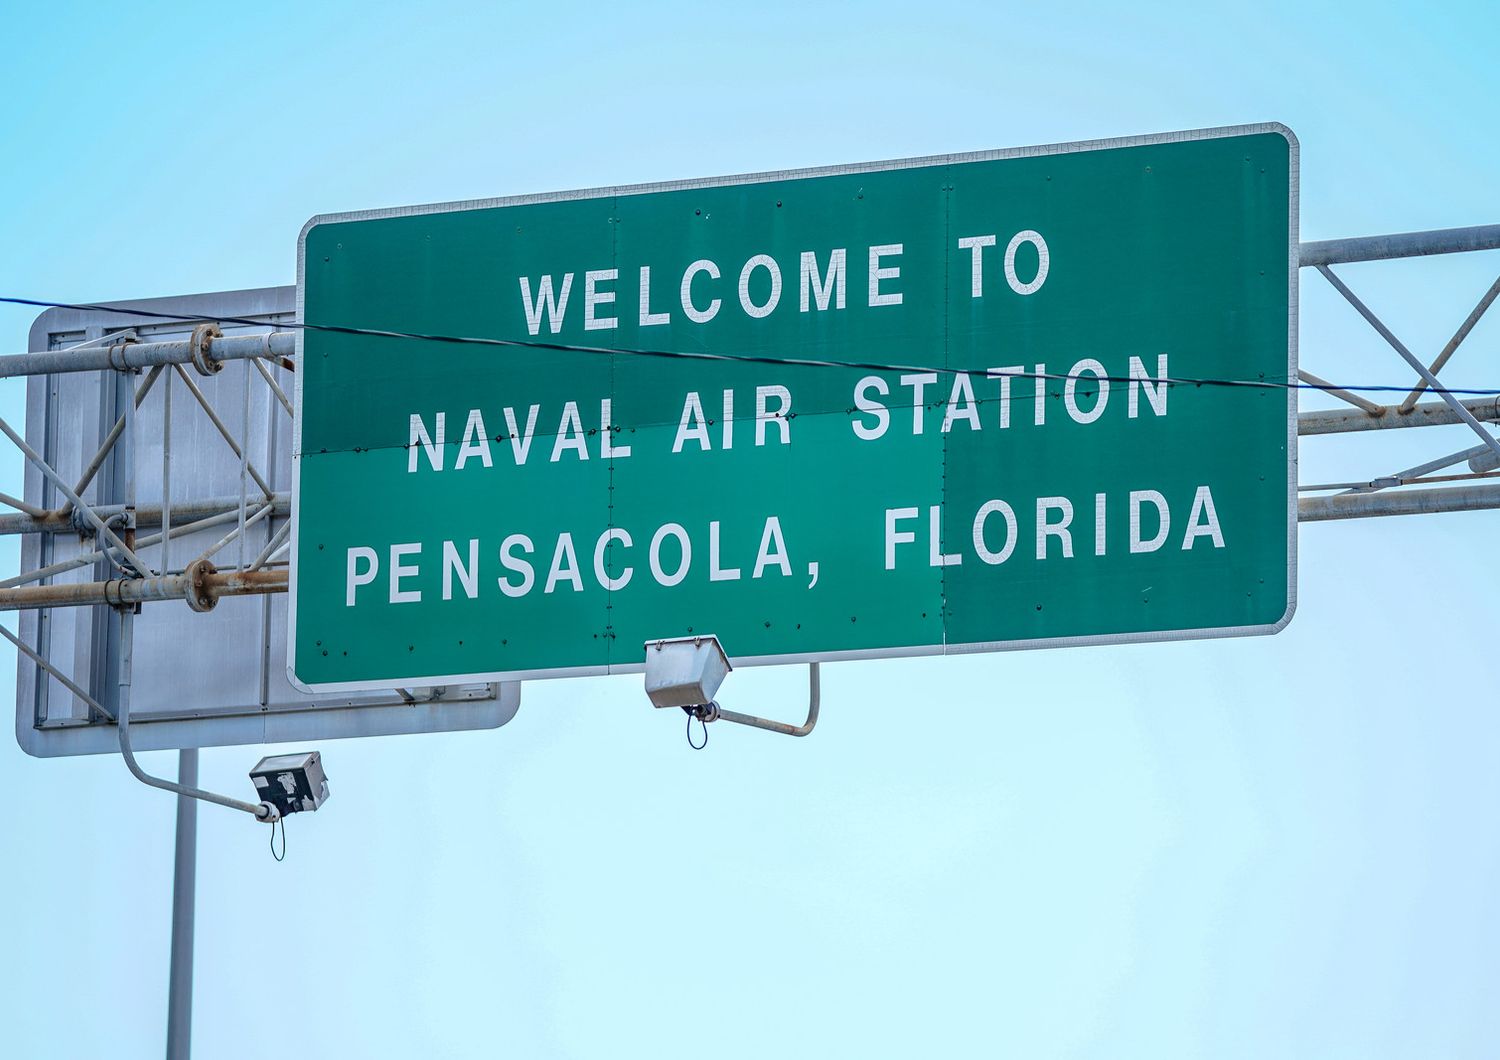 Base Pensacola, Florida